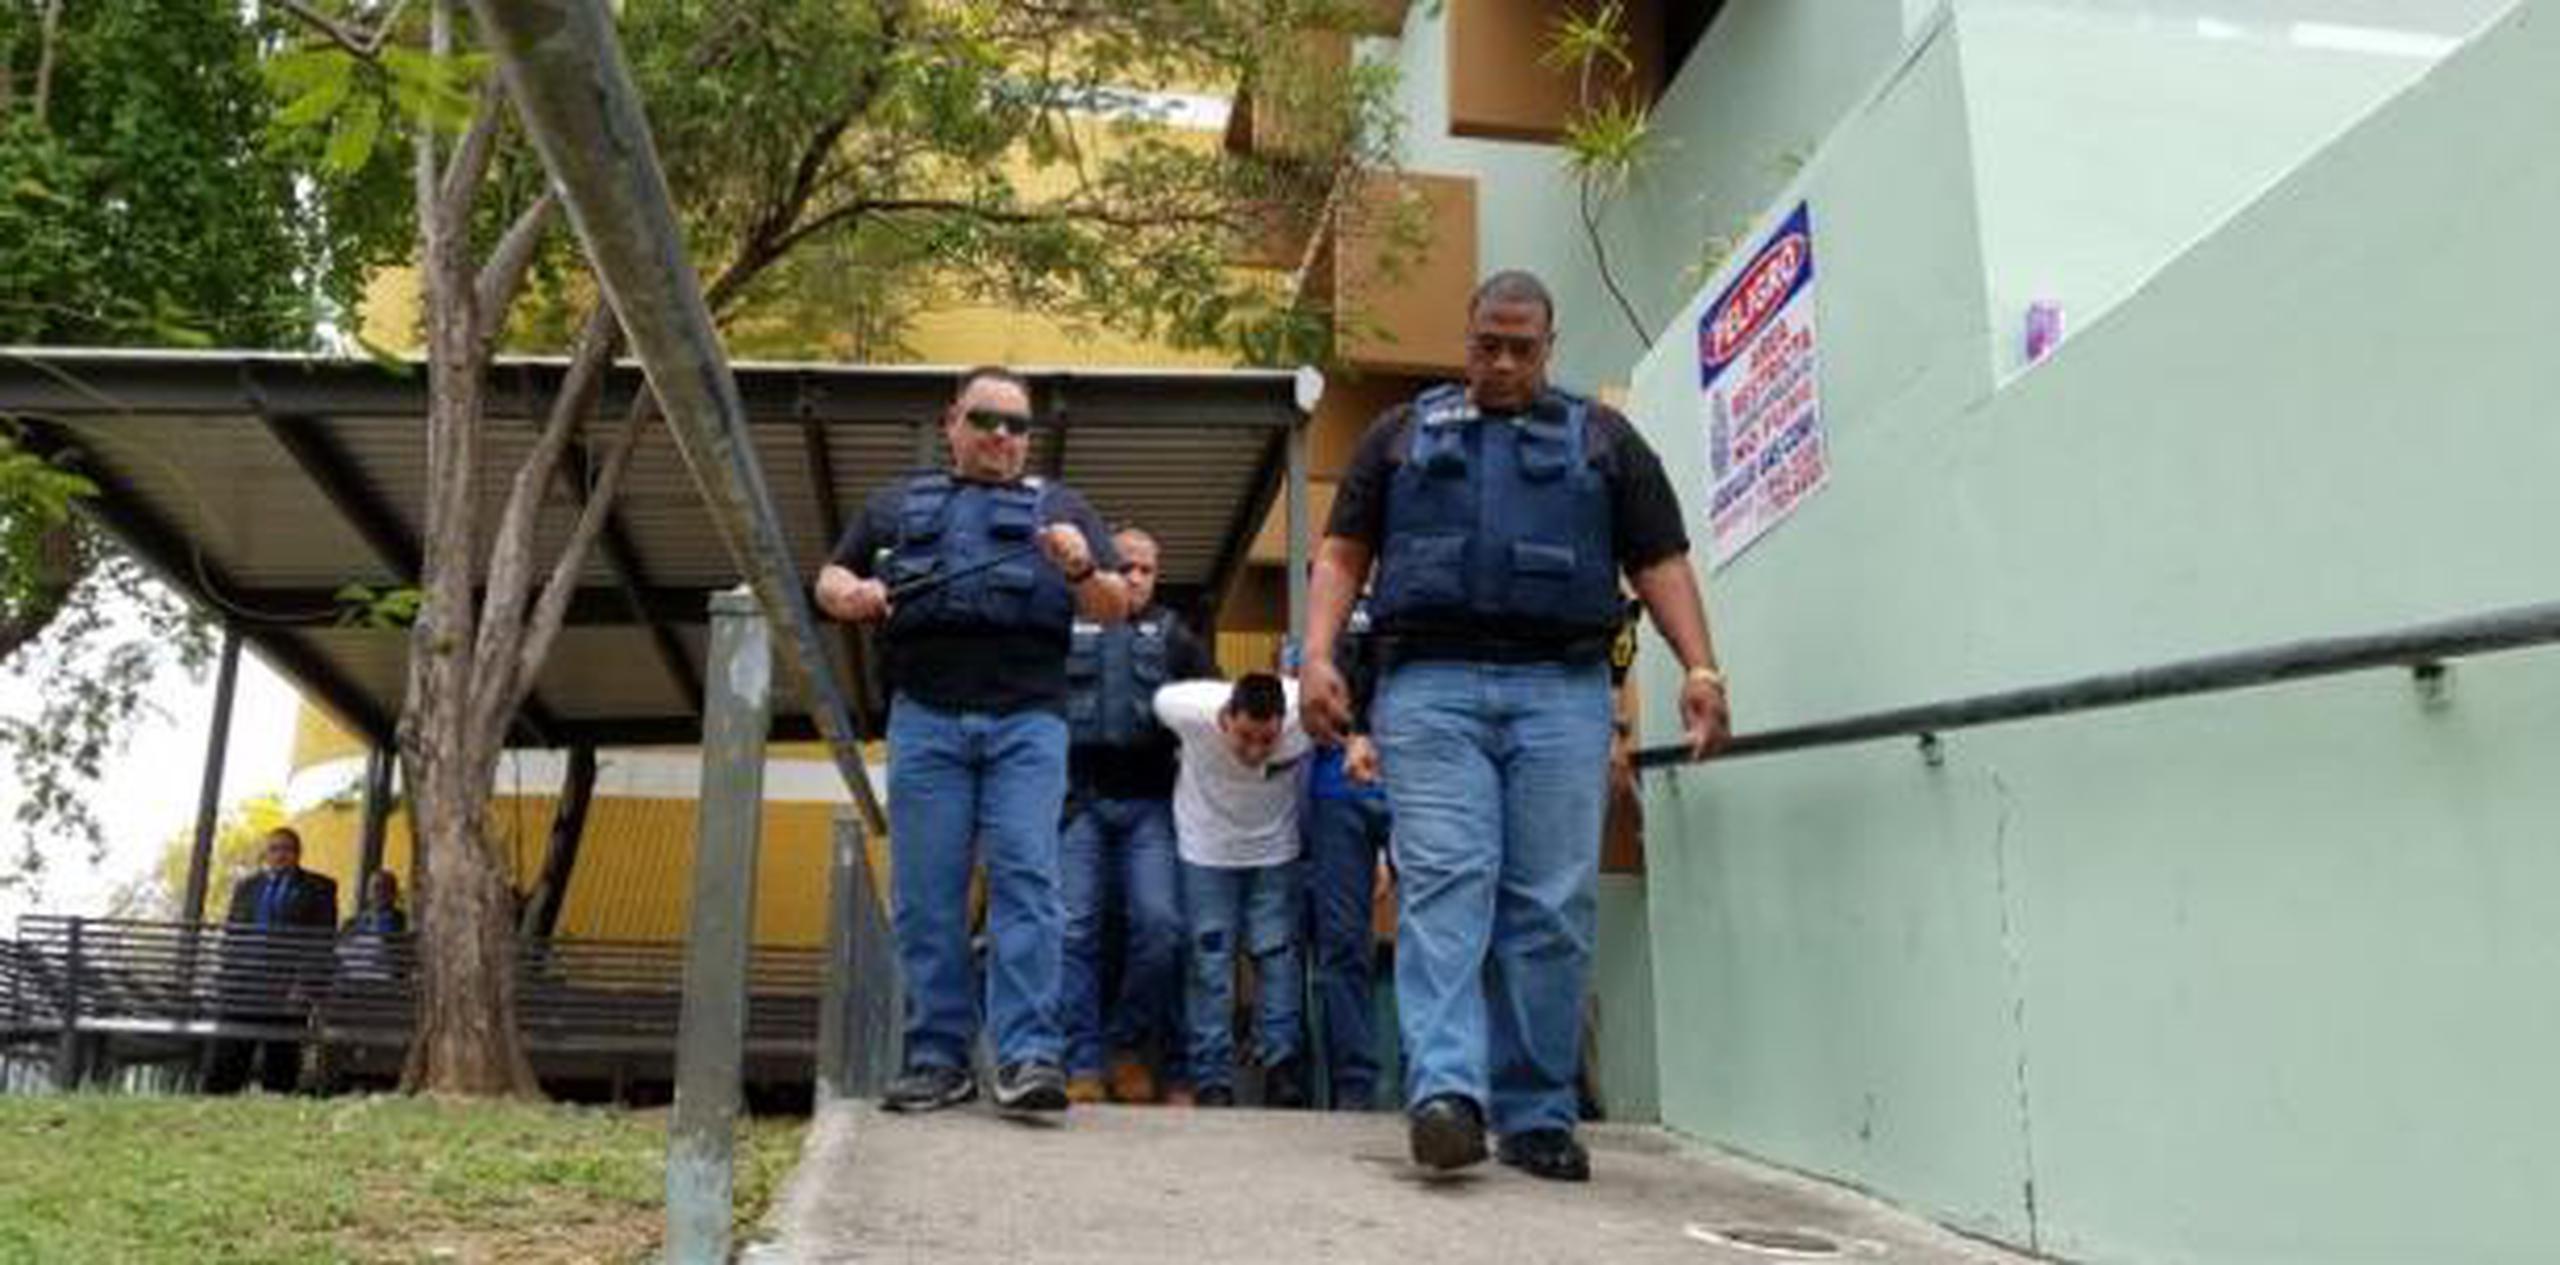 Echevarría Gómez, de 32 años, con un amplio expediente criminal, fue encarcelado nuevamente en el Complejo Correccional Las Cucharas de Ponce. (Archivo)